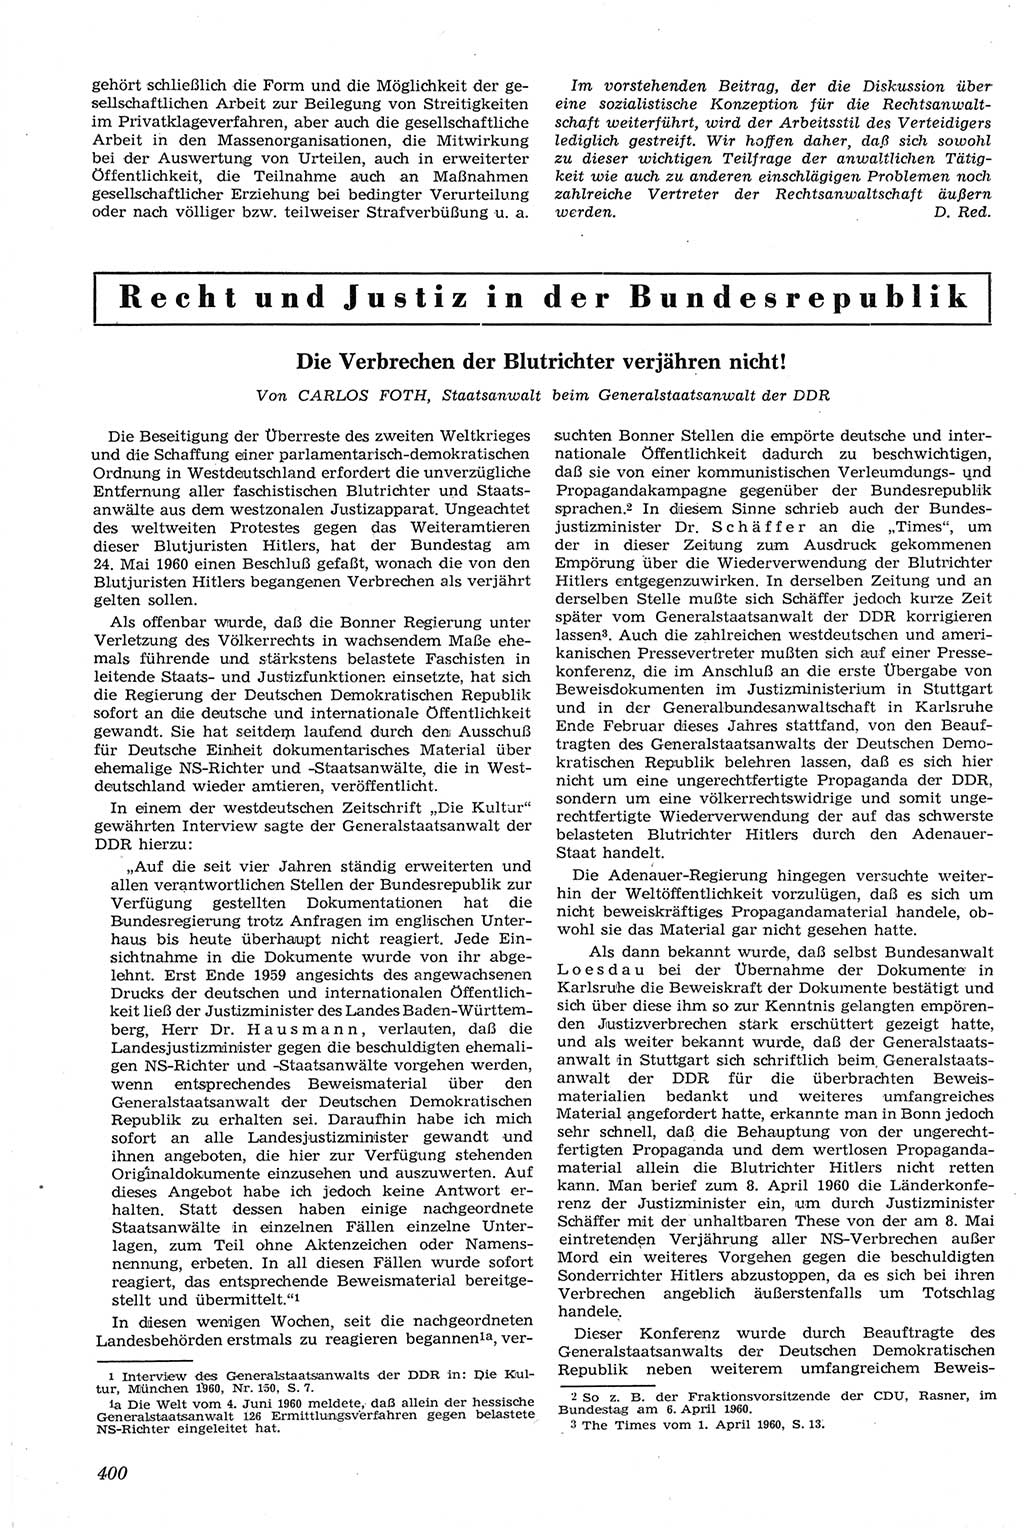 Neue Justiz (NJ), Zeitschrift für Recht und Rechtswissenschaft [Deutsche Demokratische Republik (DDR)], 14. Jahrgang 1960, Seite 400 (NJ DDR 1960, S. 400)